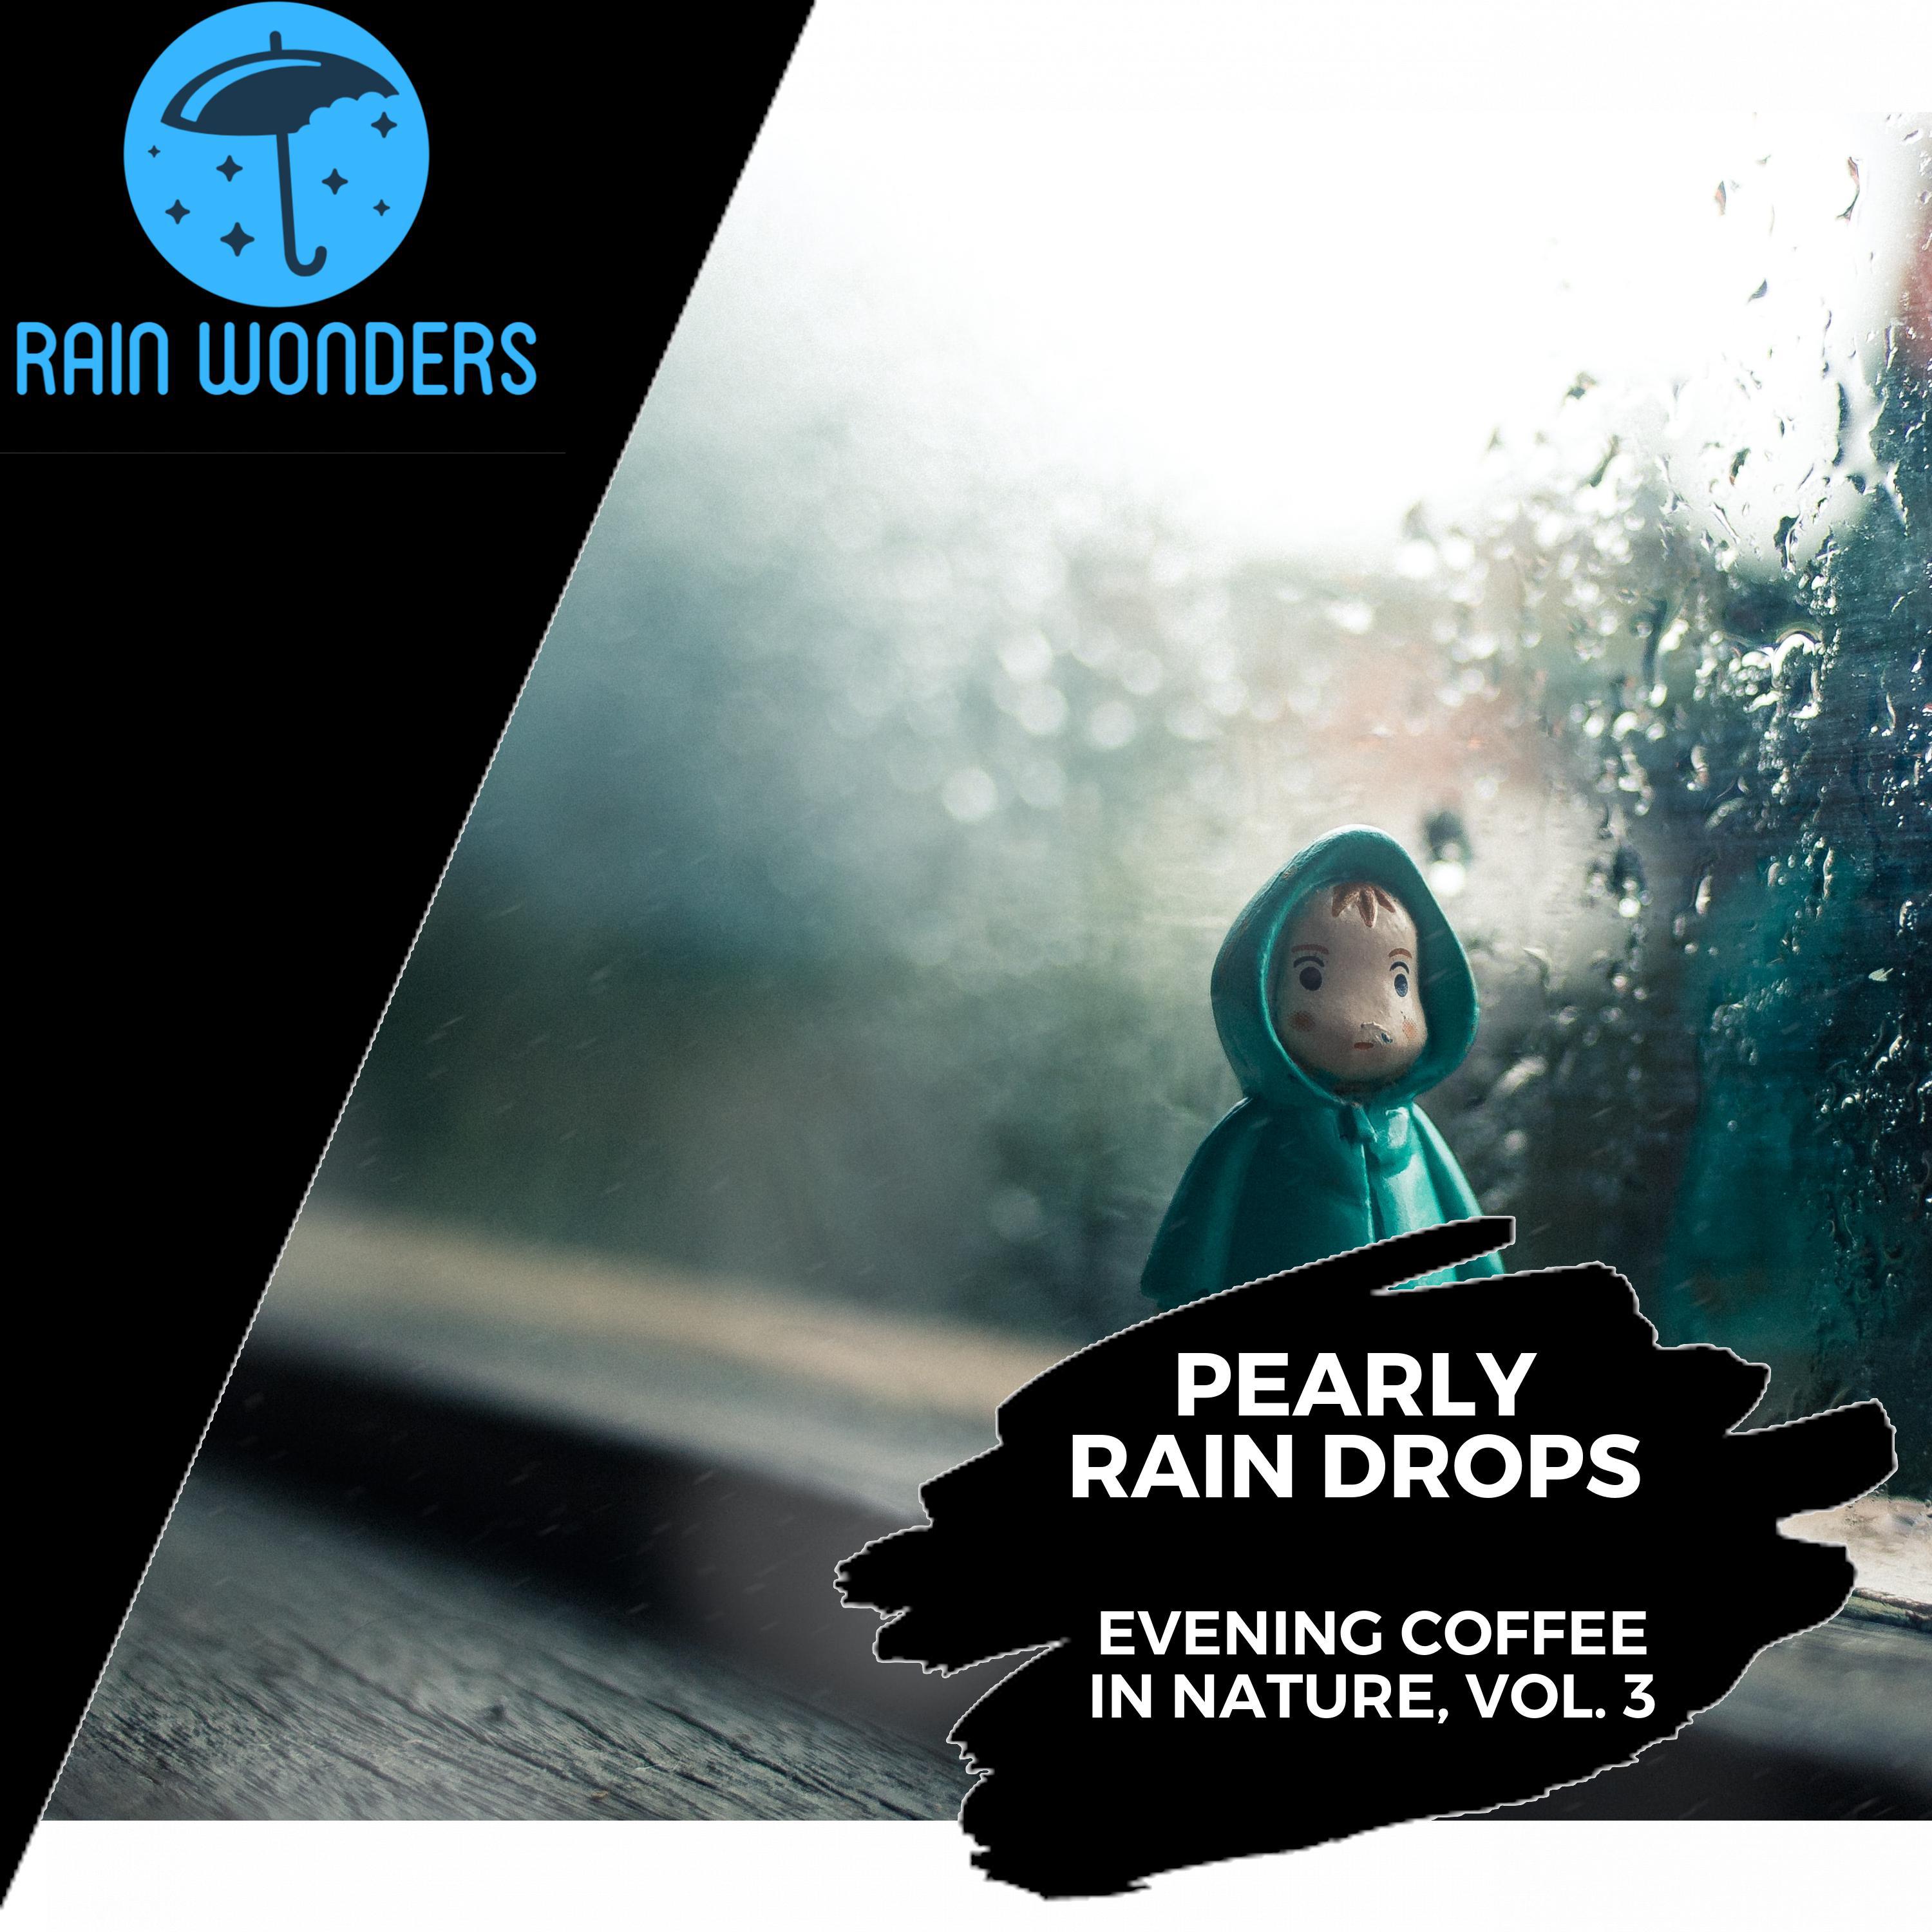 Hydro Rain Water Nature Music - Uninterrupted Rain Dripping